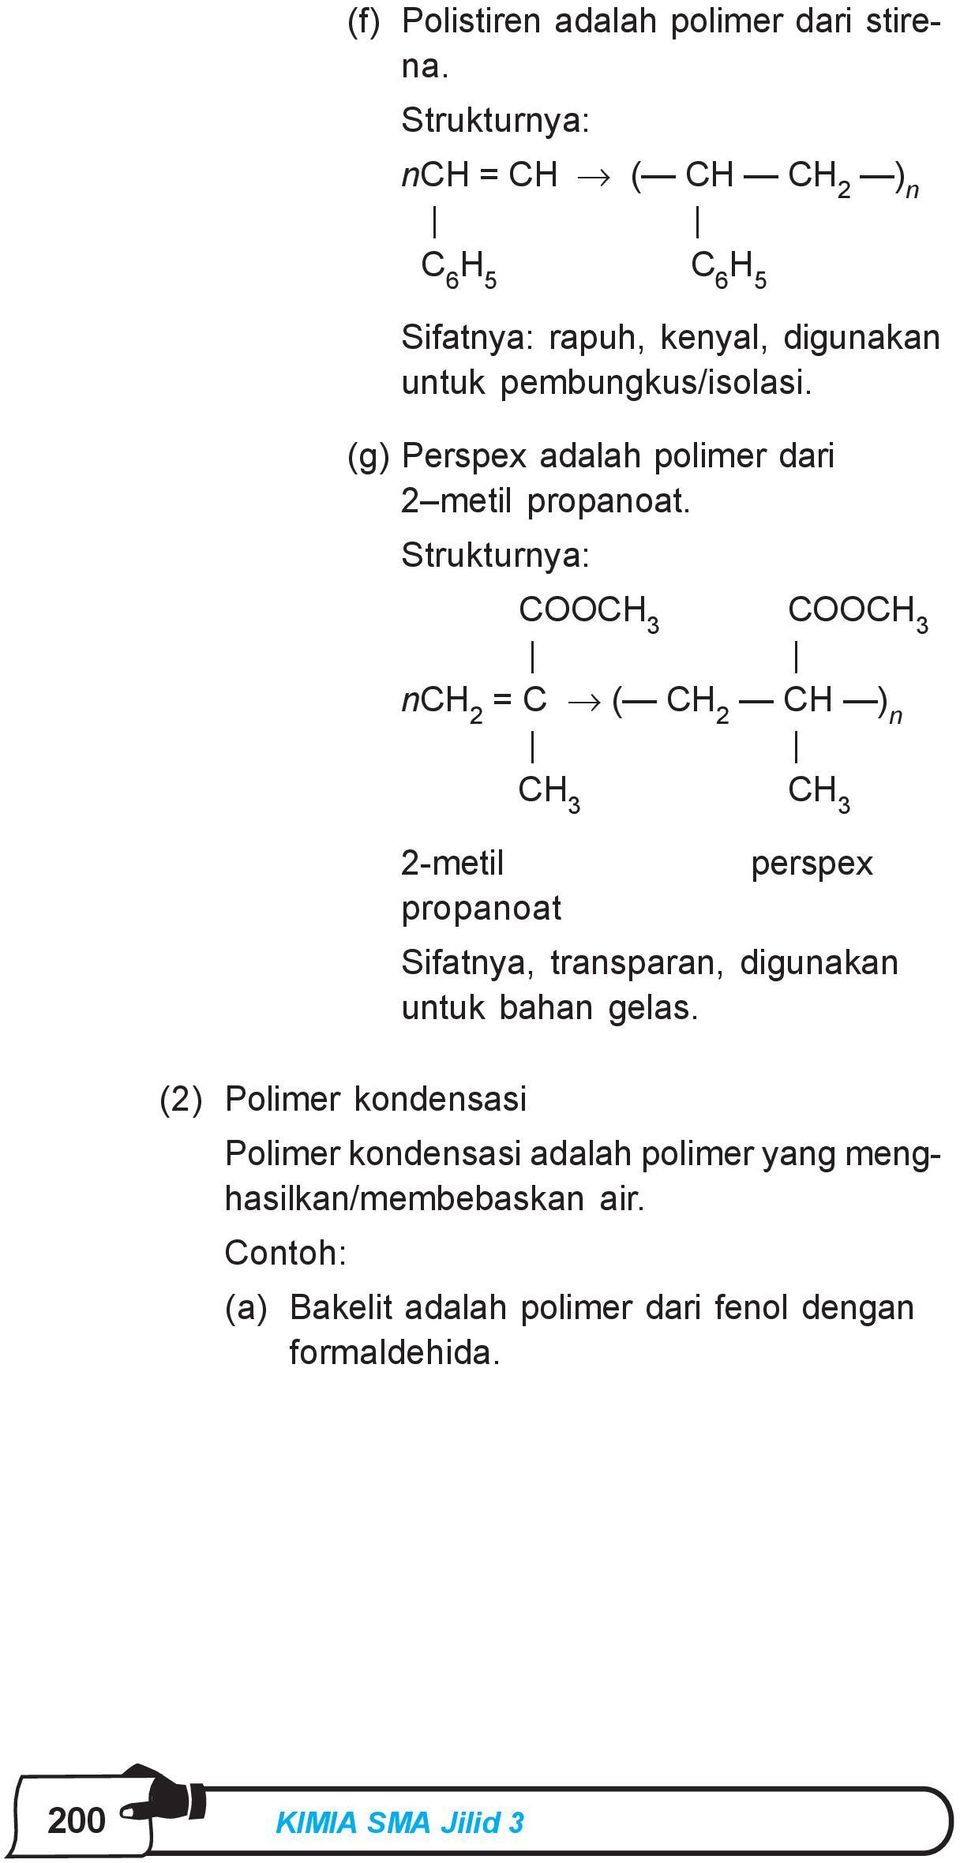 (g) Perspex adalah polimer dari 2 metil propanoat.